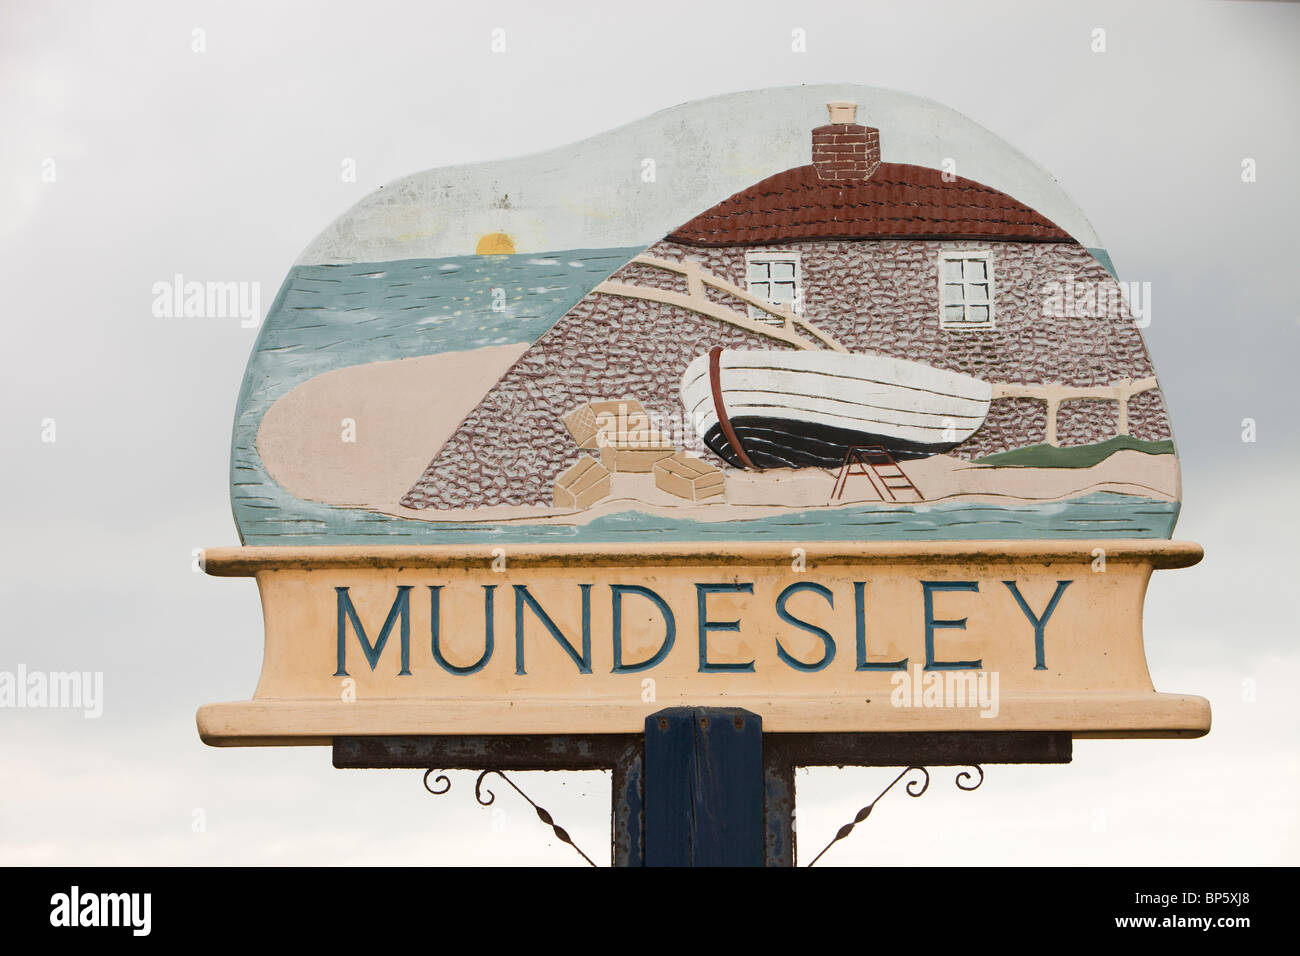 Mundesley on the Norfolk coast, UK. Stock Photo